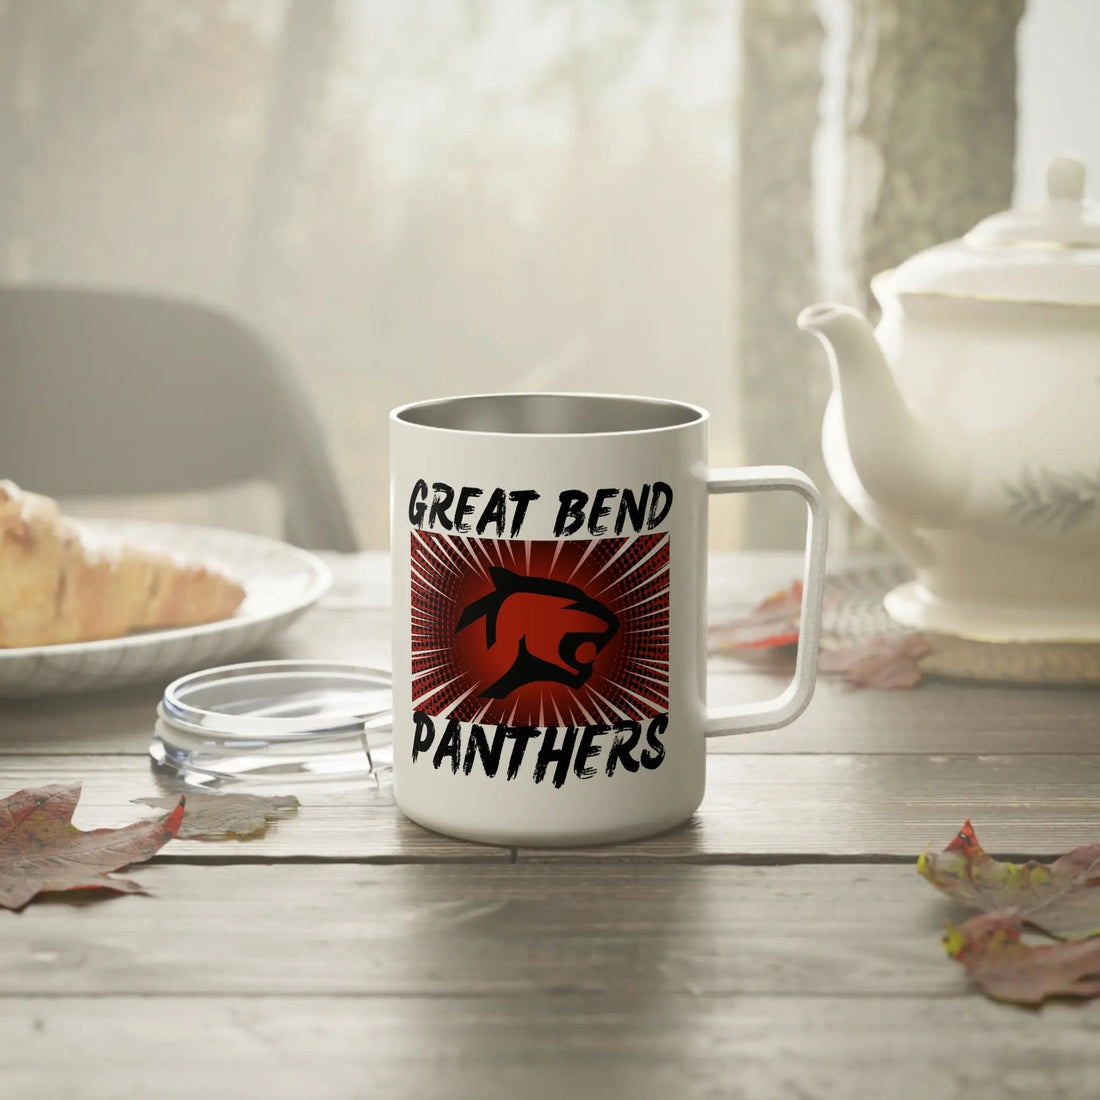 GB Panther Insulated Coffee Mug, 10oz - Mug - Positively Sassy - GB Panther Insulated Coffee Mug, 10oz